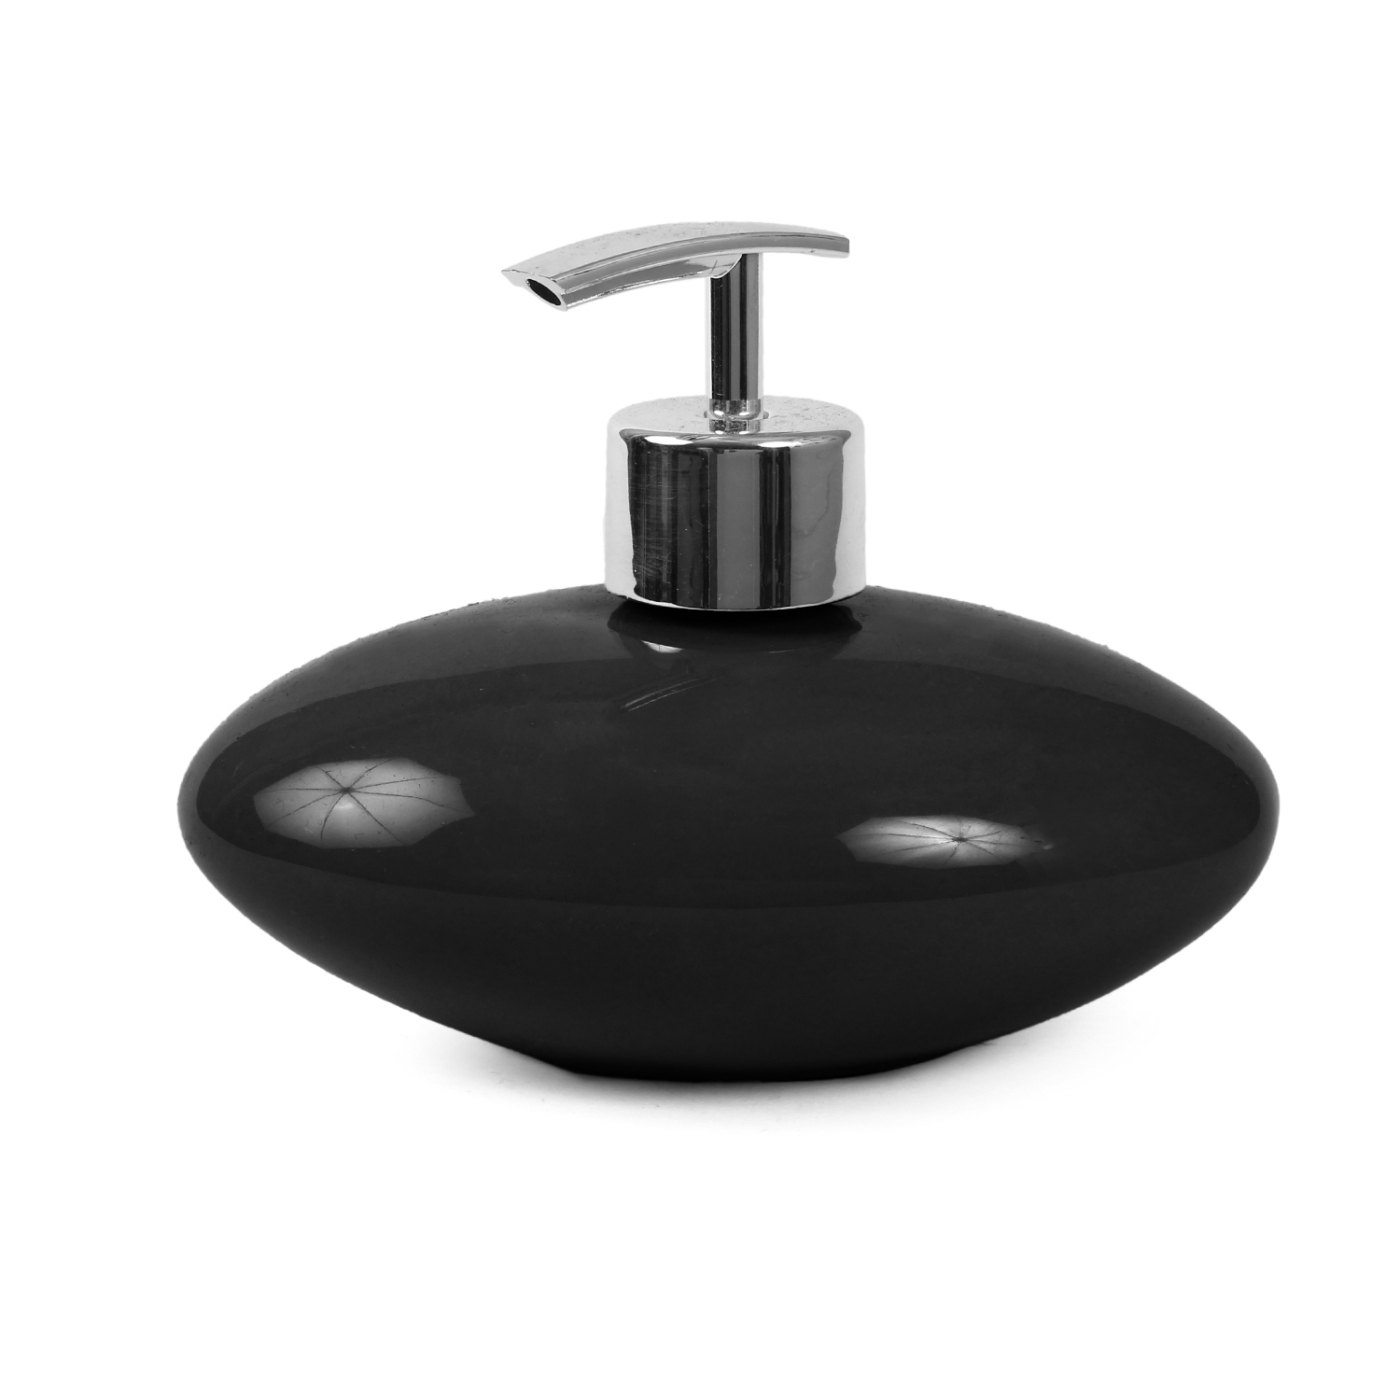 ORKA HOME Oval Soap Dispenser - Black  